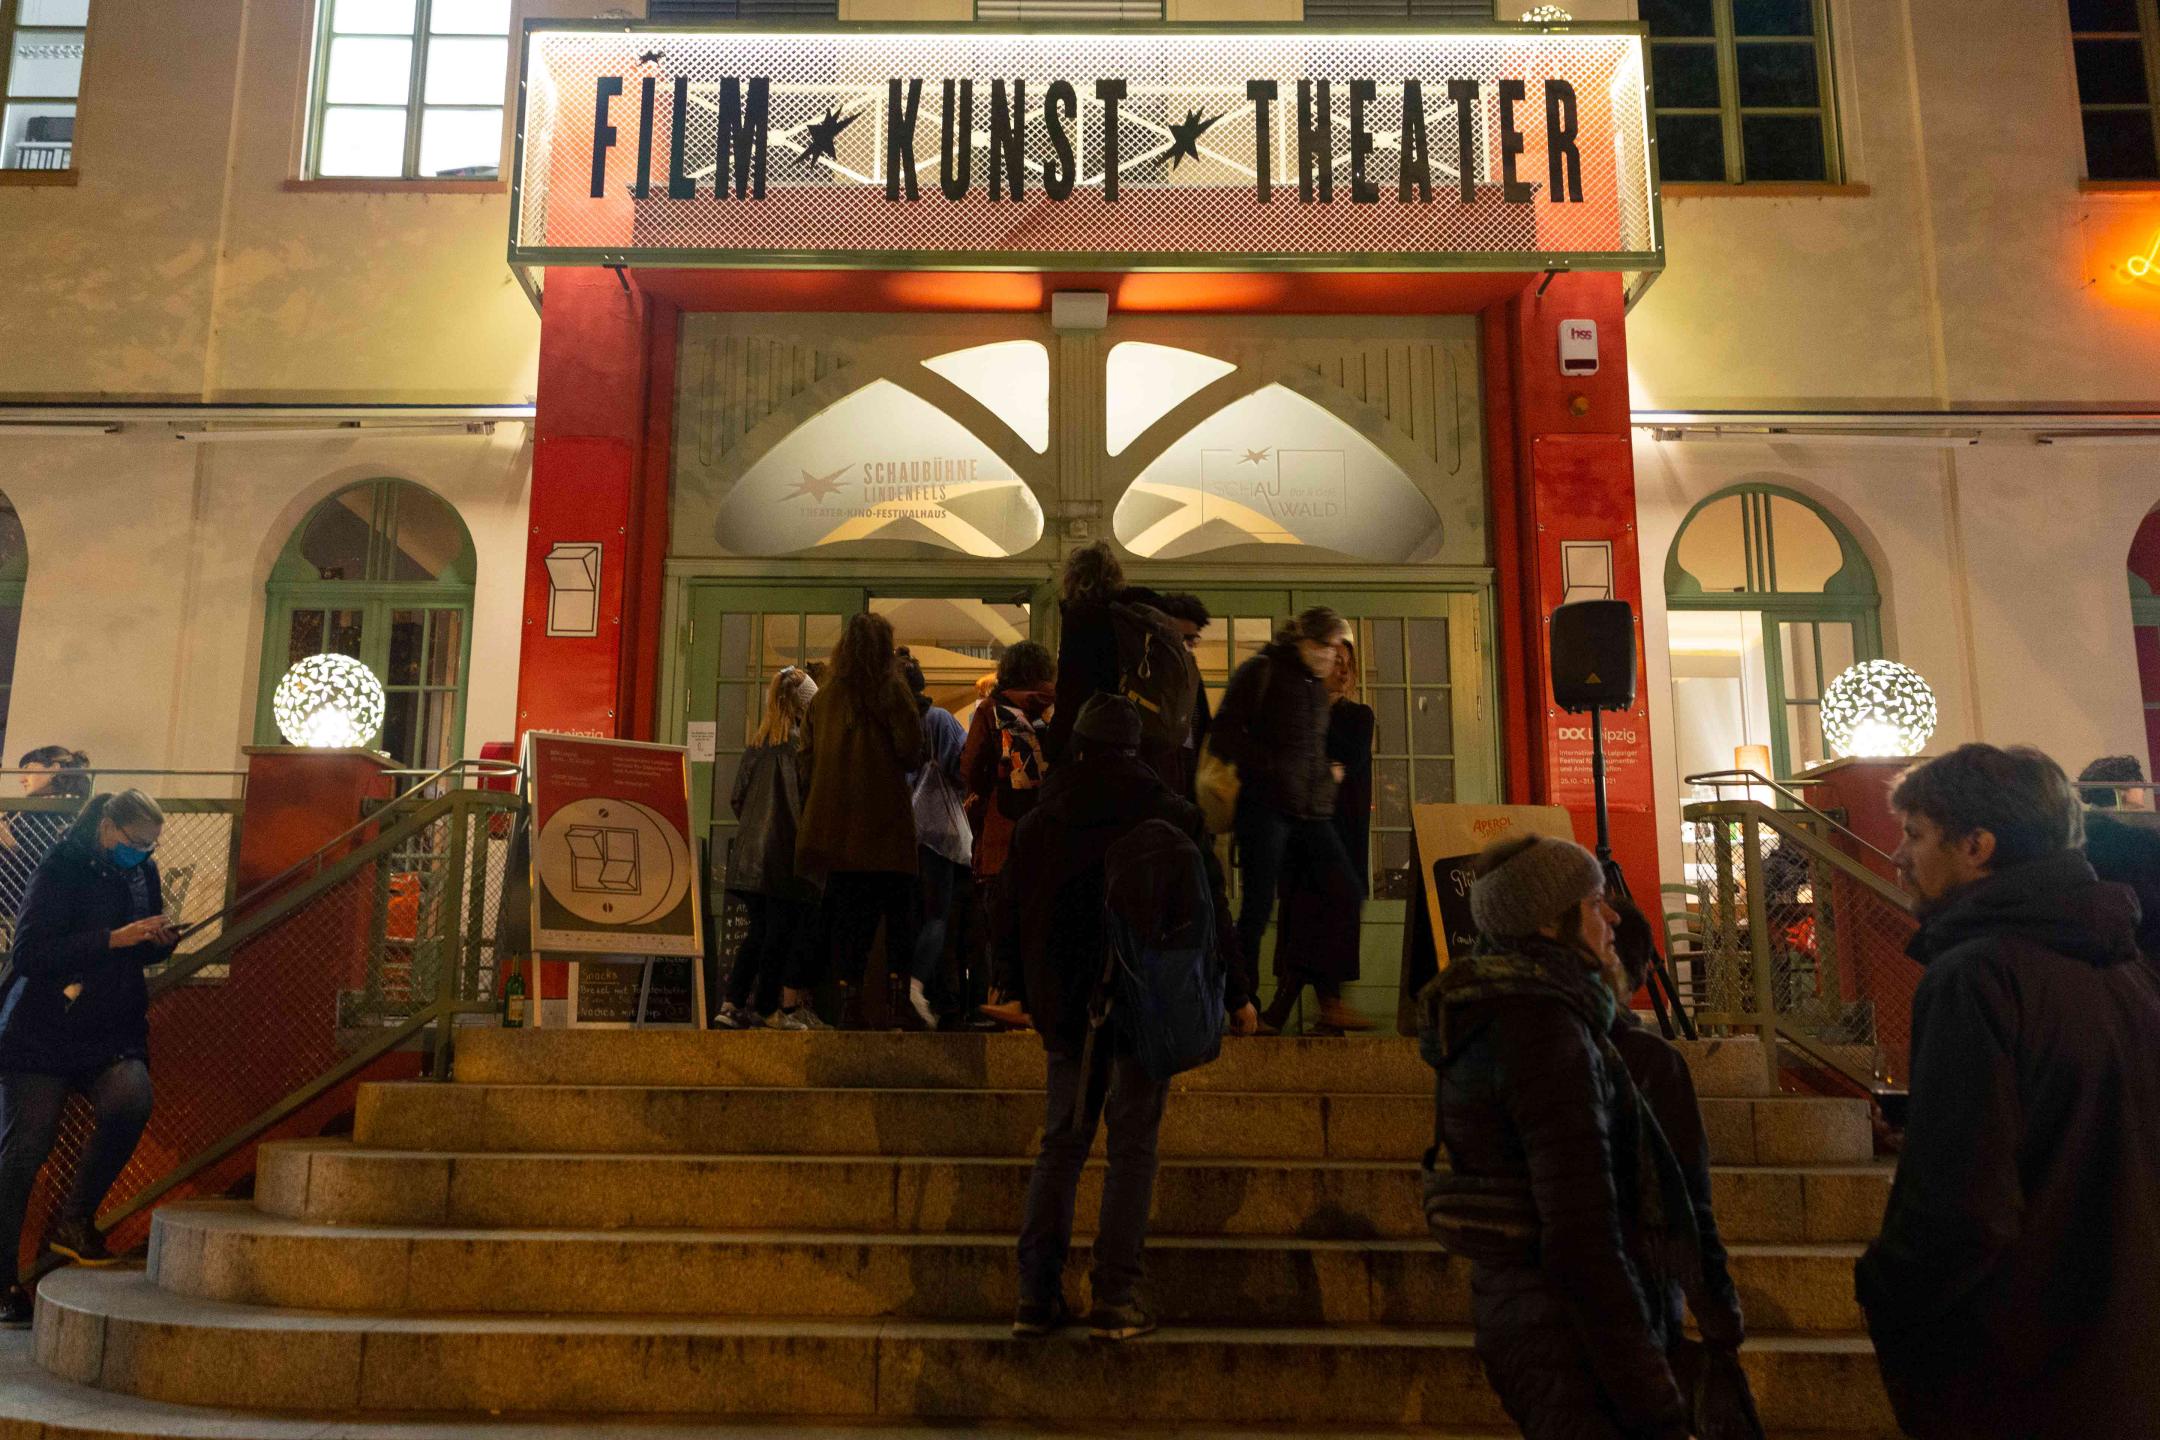 Mehrere Personen stehen Schlange an einer Treppe, die zu einem großen beleuchteten Eingang führt. Darüber steht "Film * Kunst * Theater".